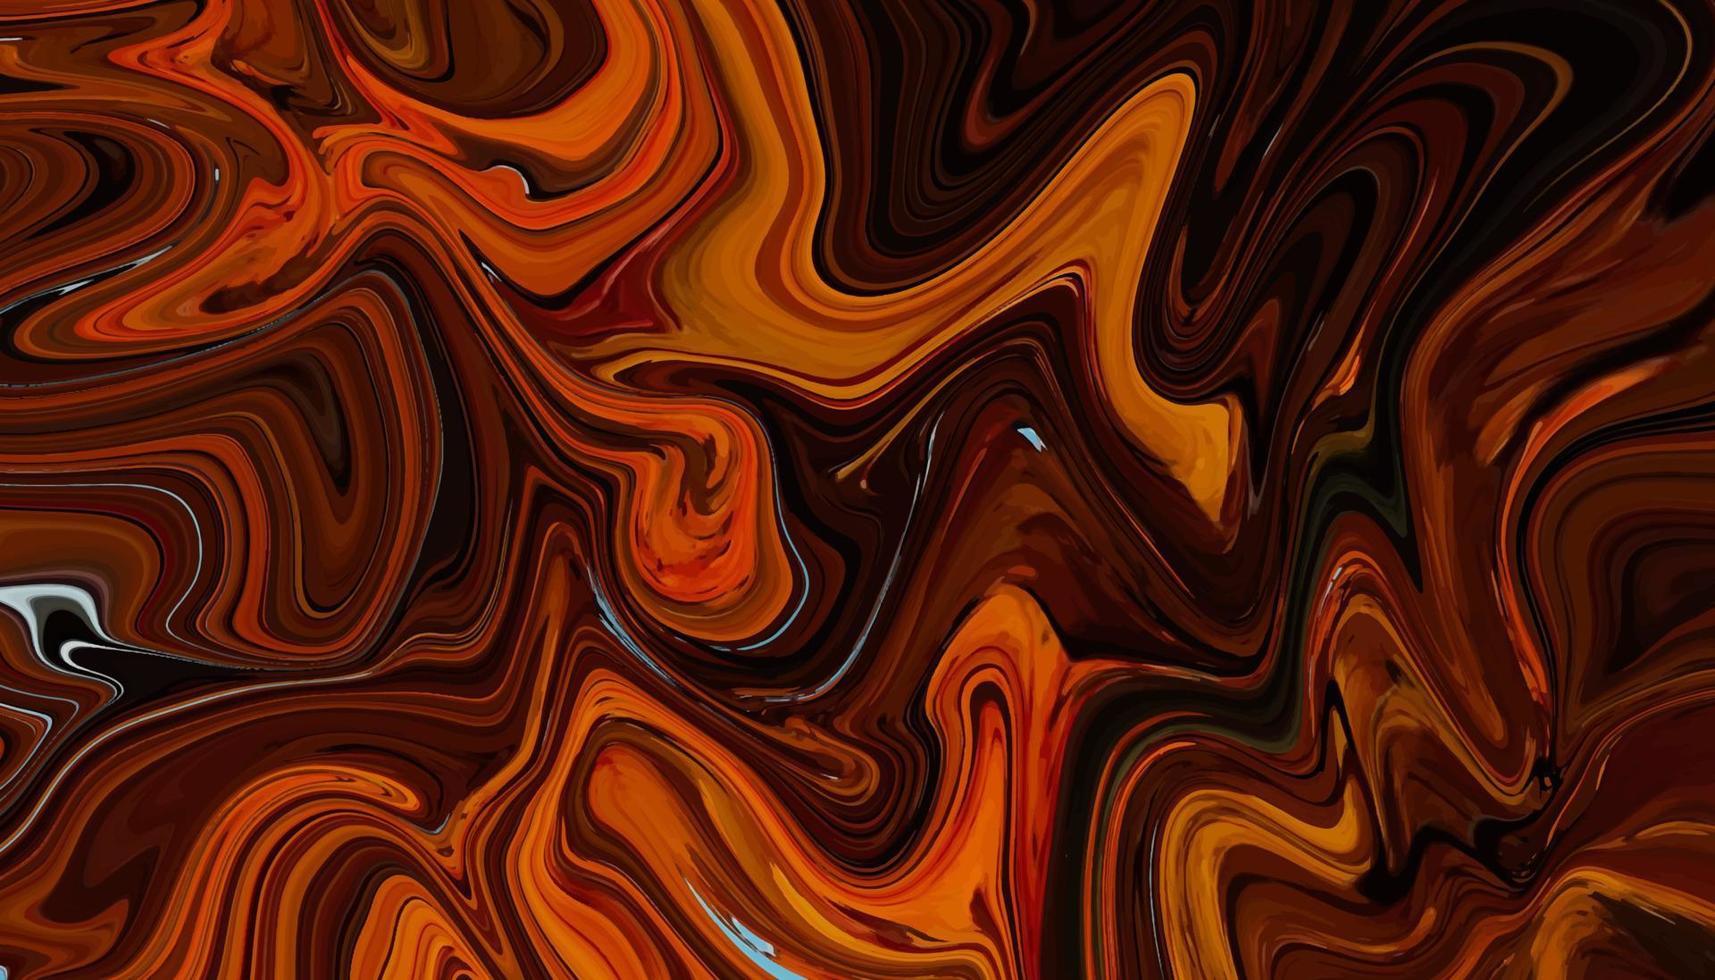 moderne en trendy abstracte kleurrijke vloeibare marmeren verfachtergrond vector